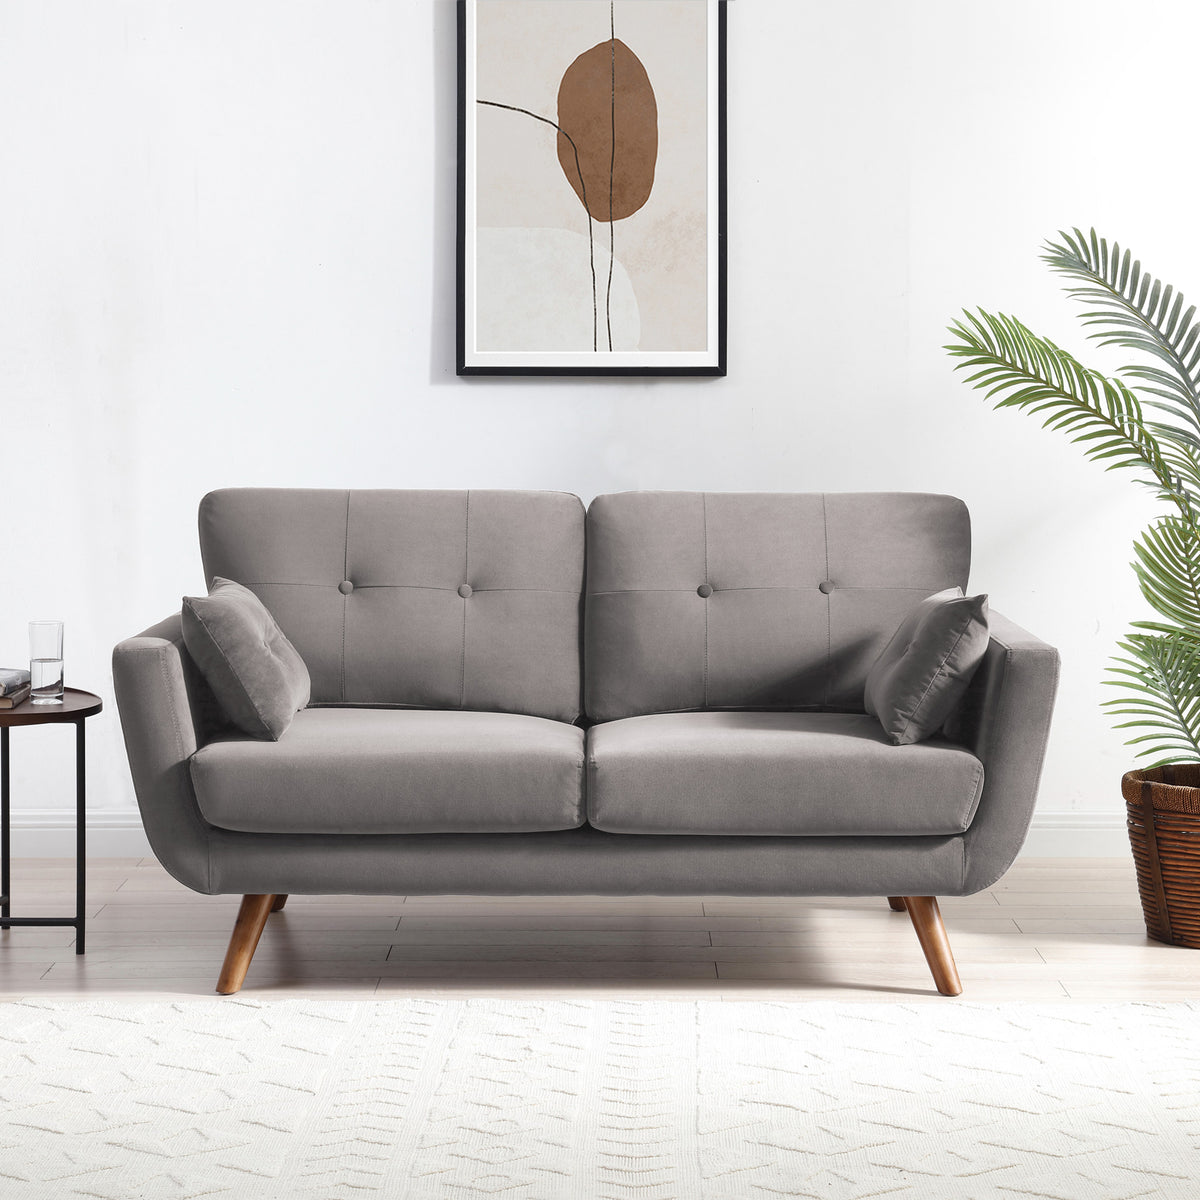 Trom Grey Velvet 2 Seater Sofa by Roseland Furniture